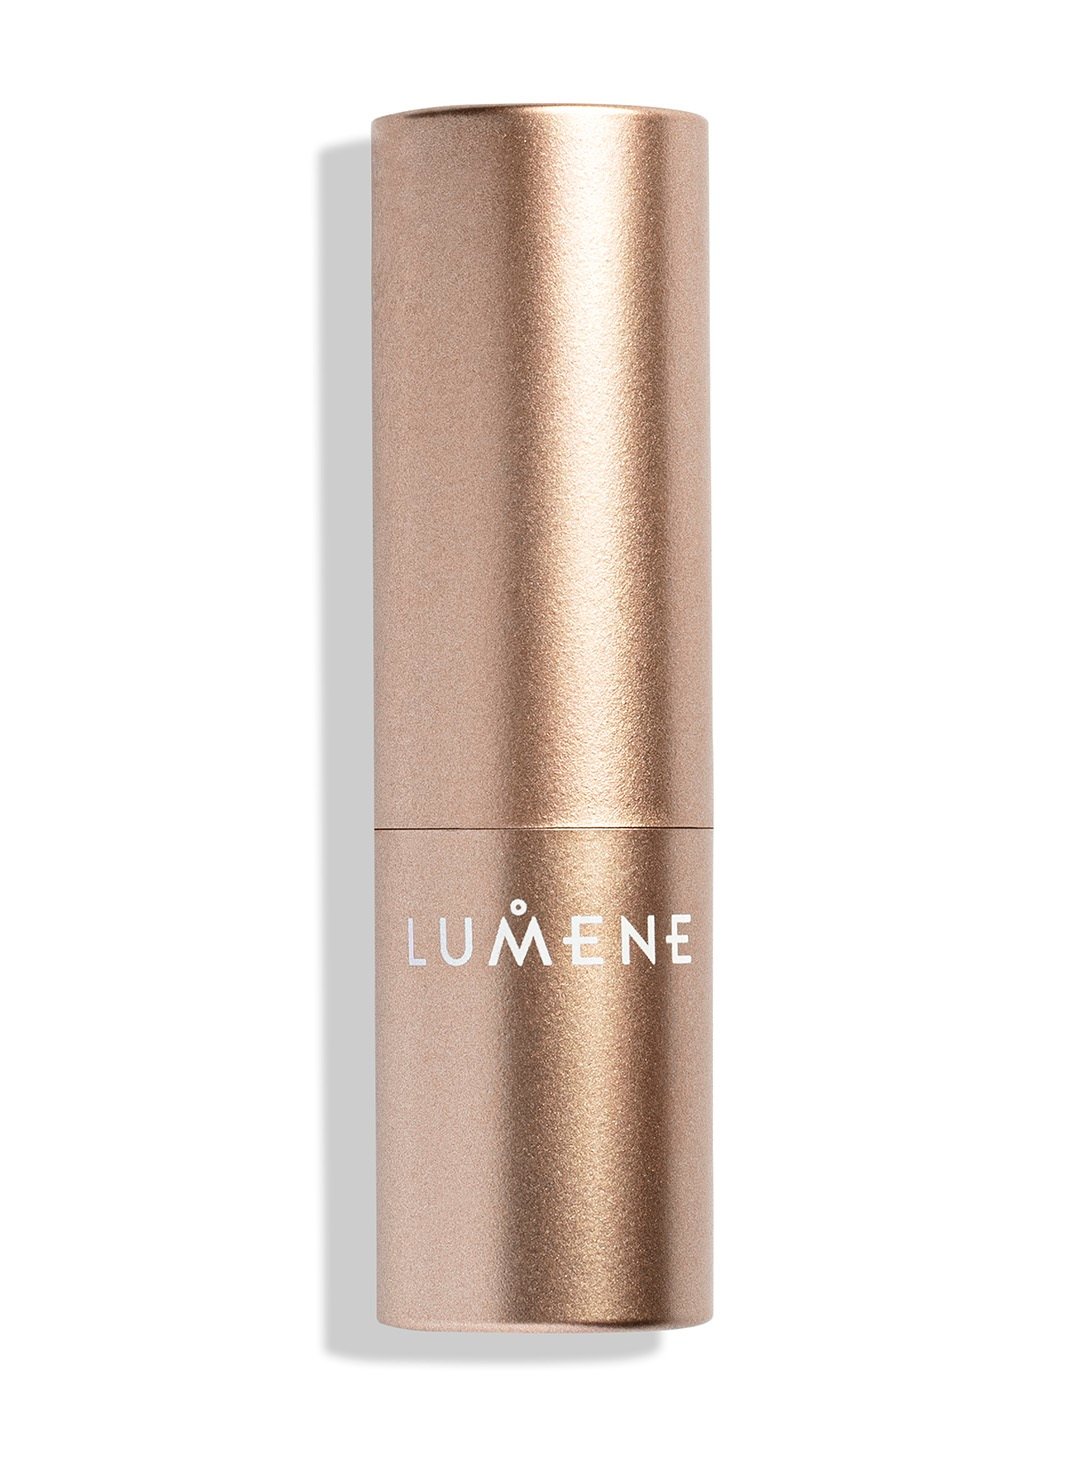 Увлажняющая помада с матовым эффектом Lumene Luminous, тон 104 (Rose), 4.7 г (8000019685938) - фото 2